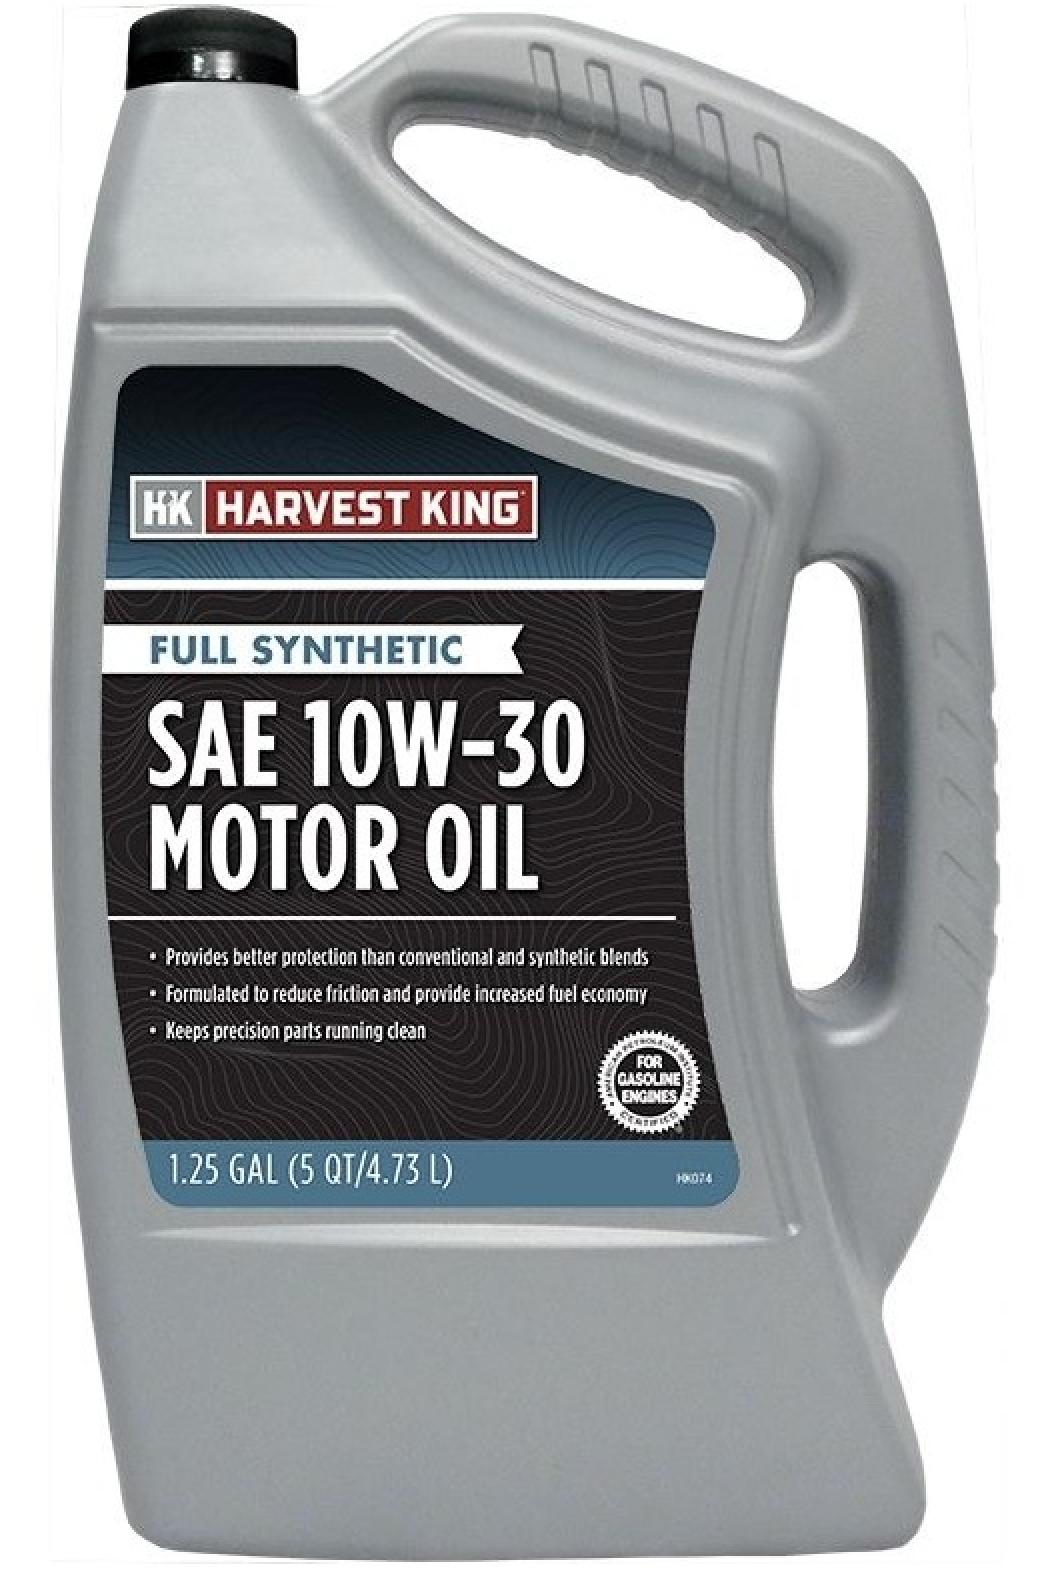 Harvest King Full Synthetic SAE 10W-30 Motor Oil